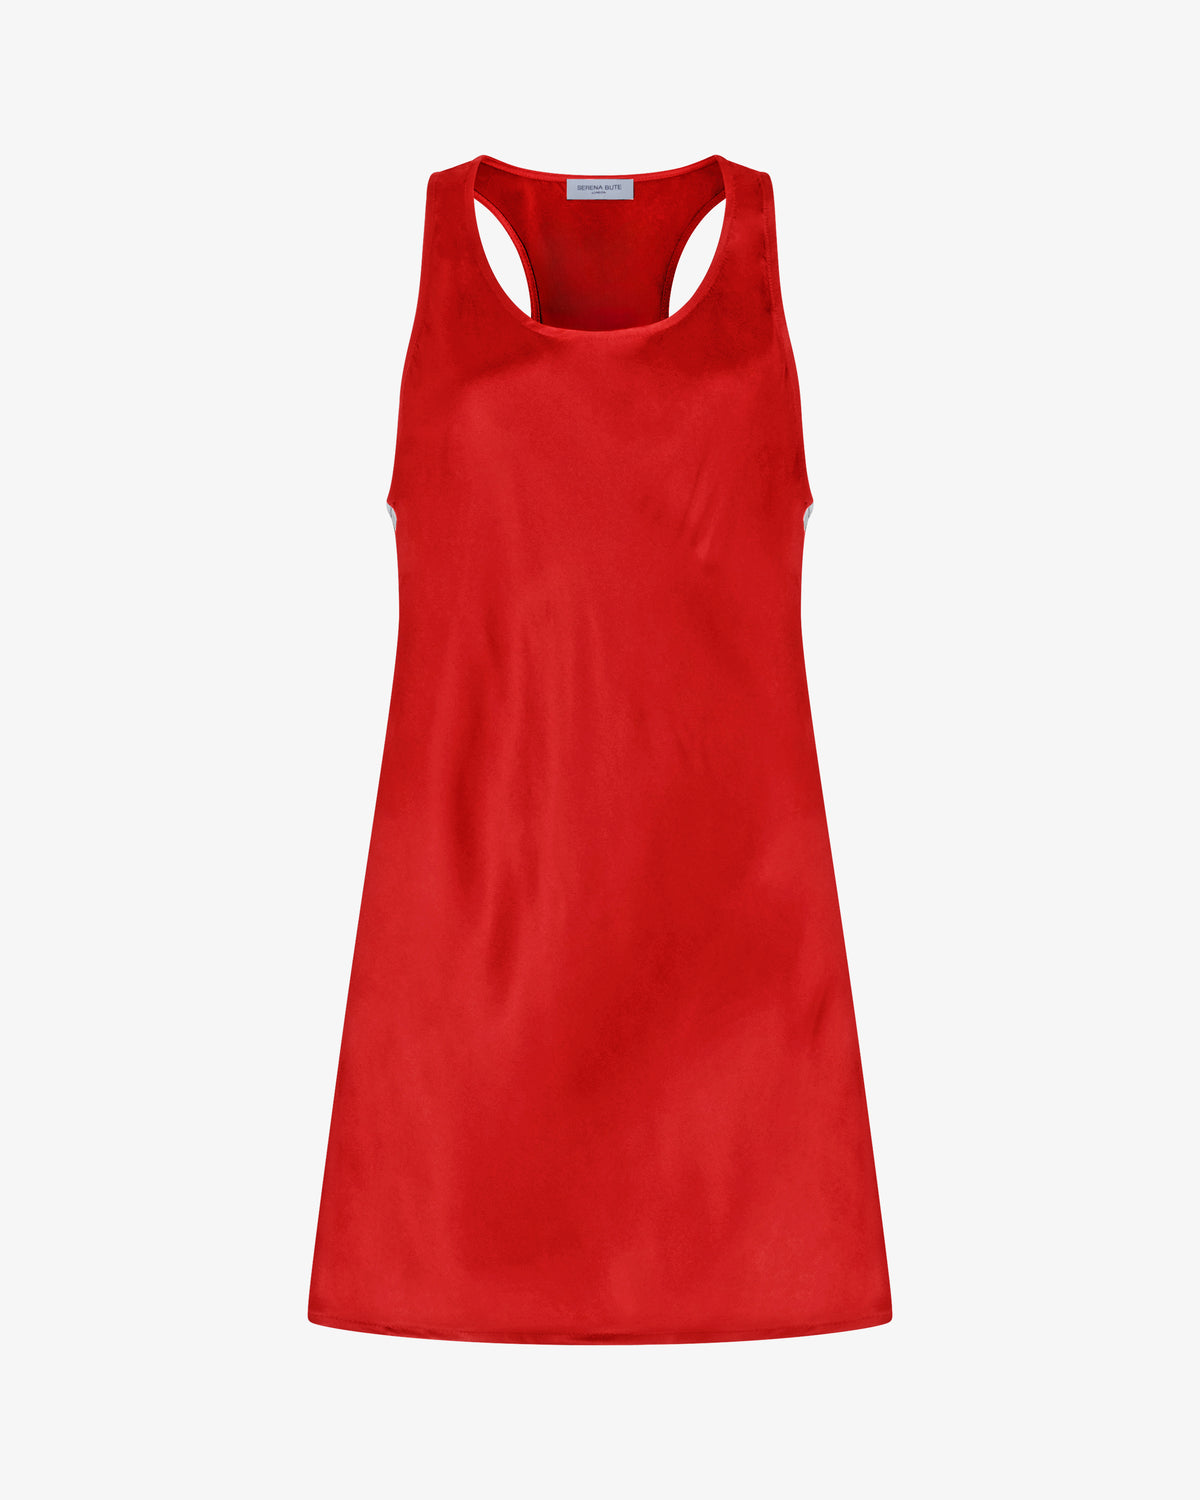 Satin Racer Mini Tank Dress - Retro Red